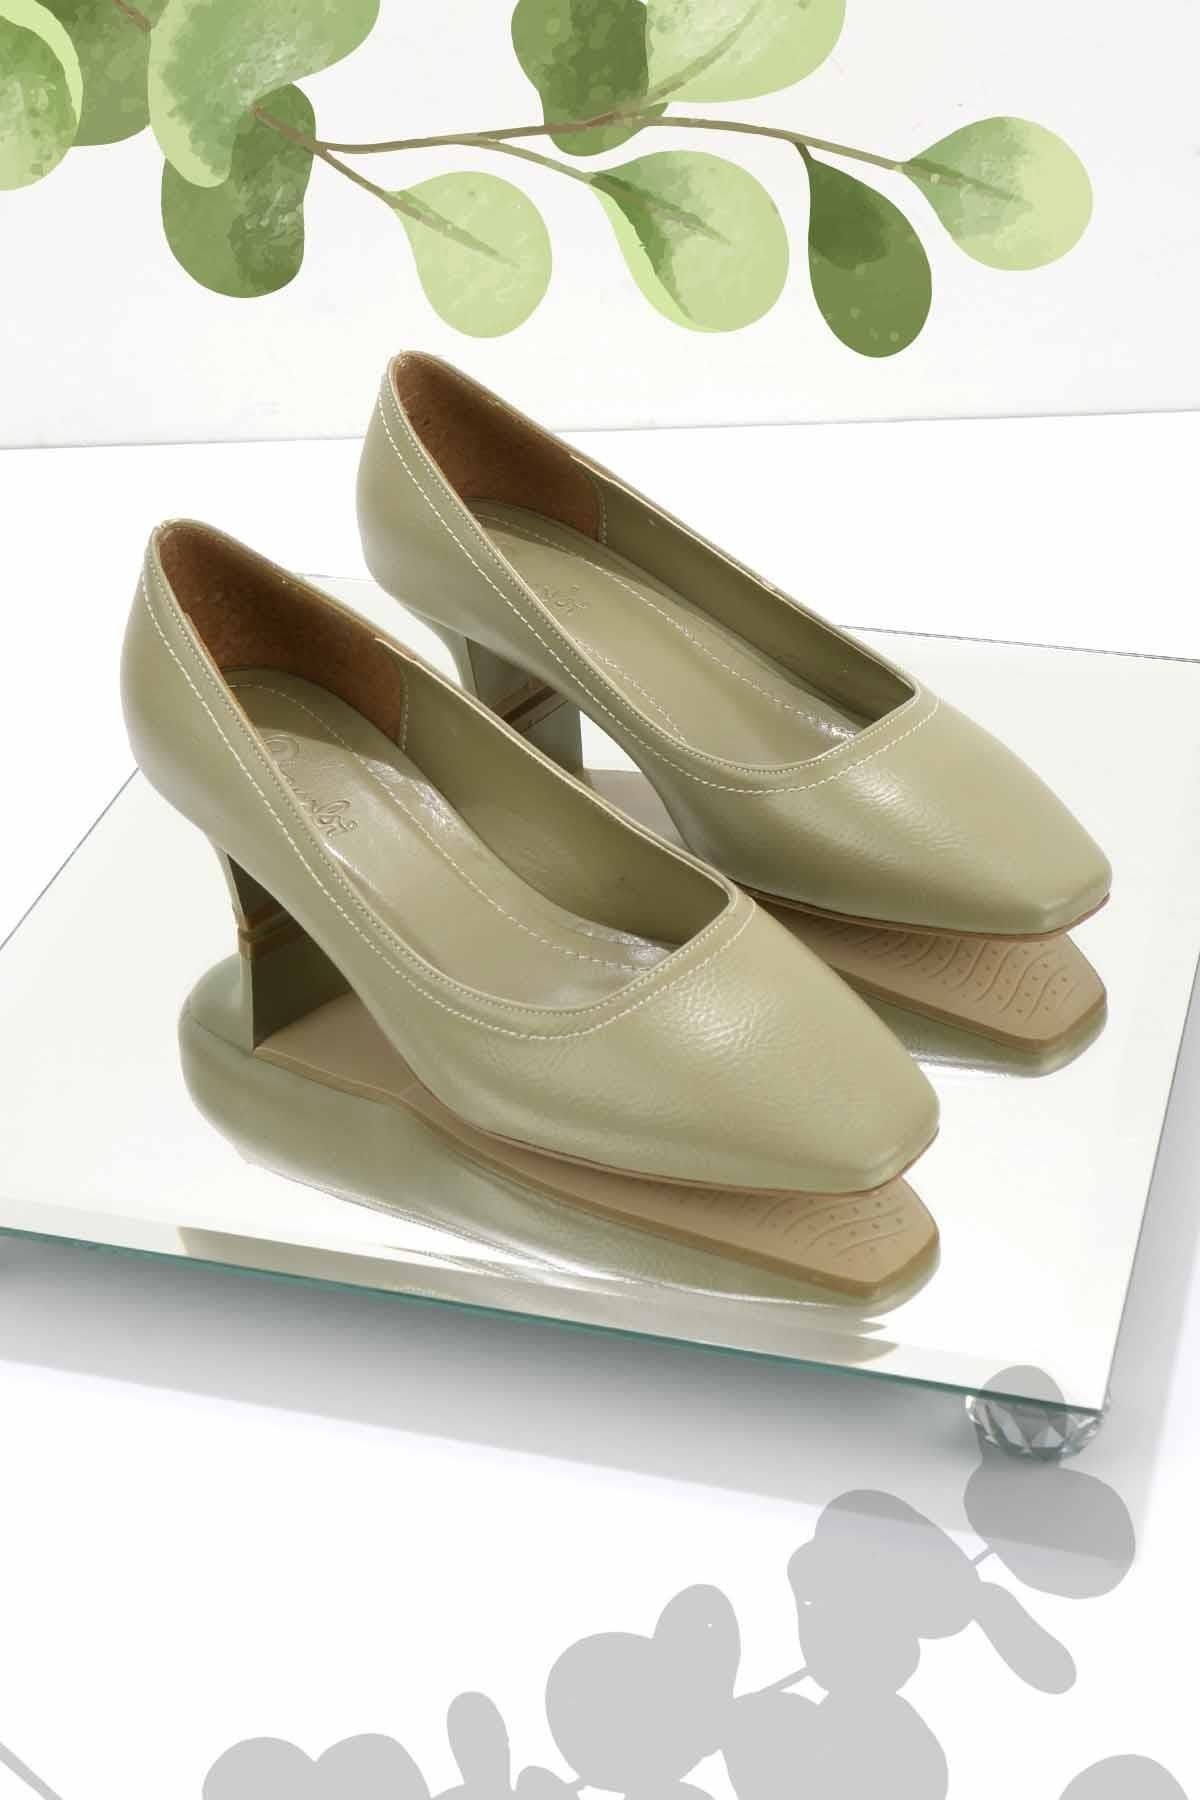 Bambi Yeşil Kırışık Kadın Klasik Topuklu Ayakkabı K01237012542